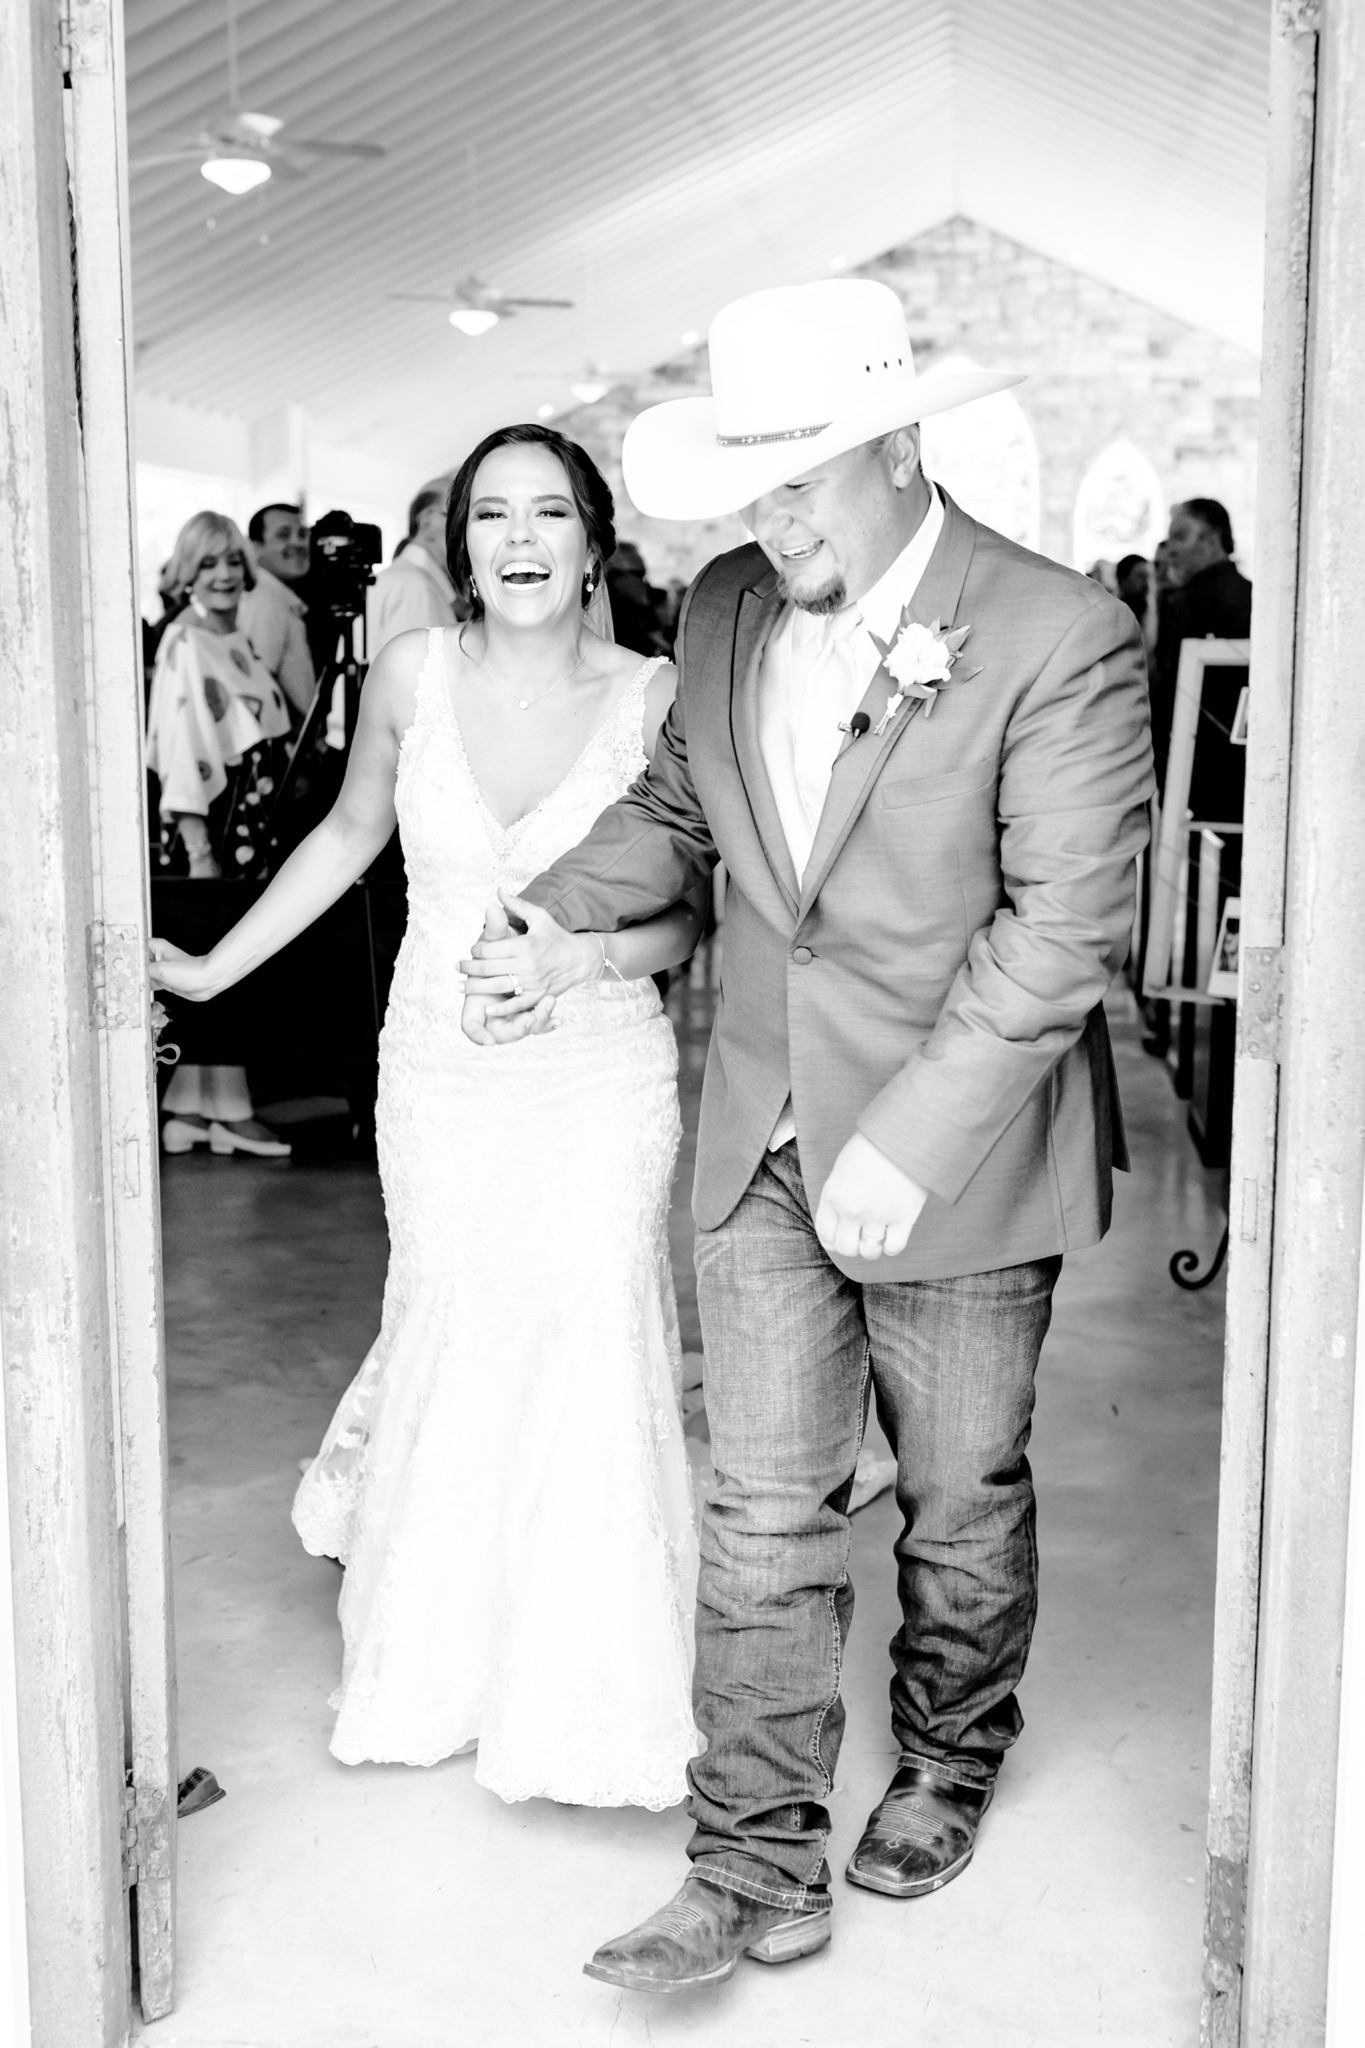 A Dusty Pink and Coral Wedding at Chandelier of Gruene in New Braunfels, TX by Dawn Elizabeth Studios, New Braunfels Wedding Photographer